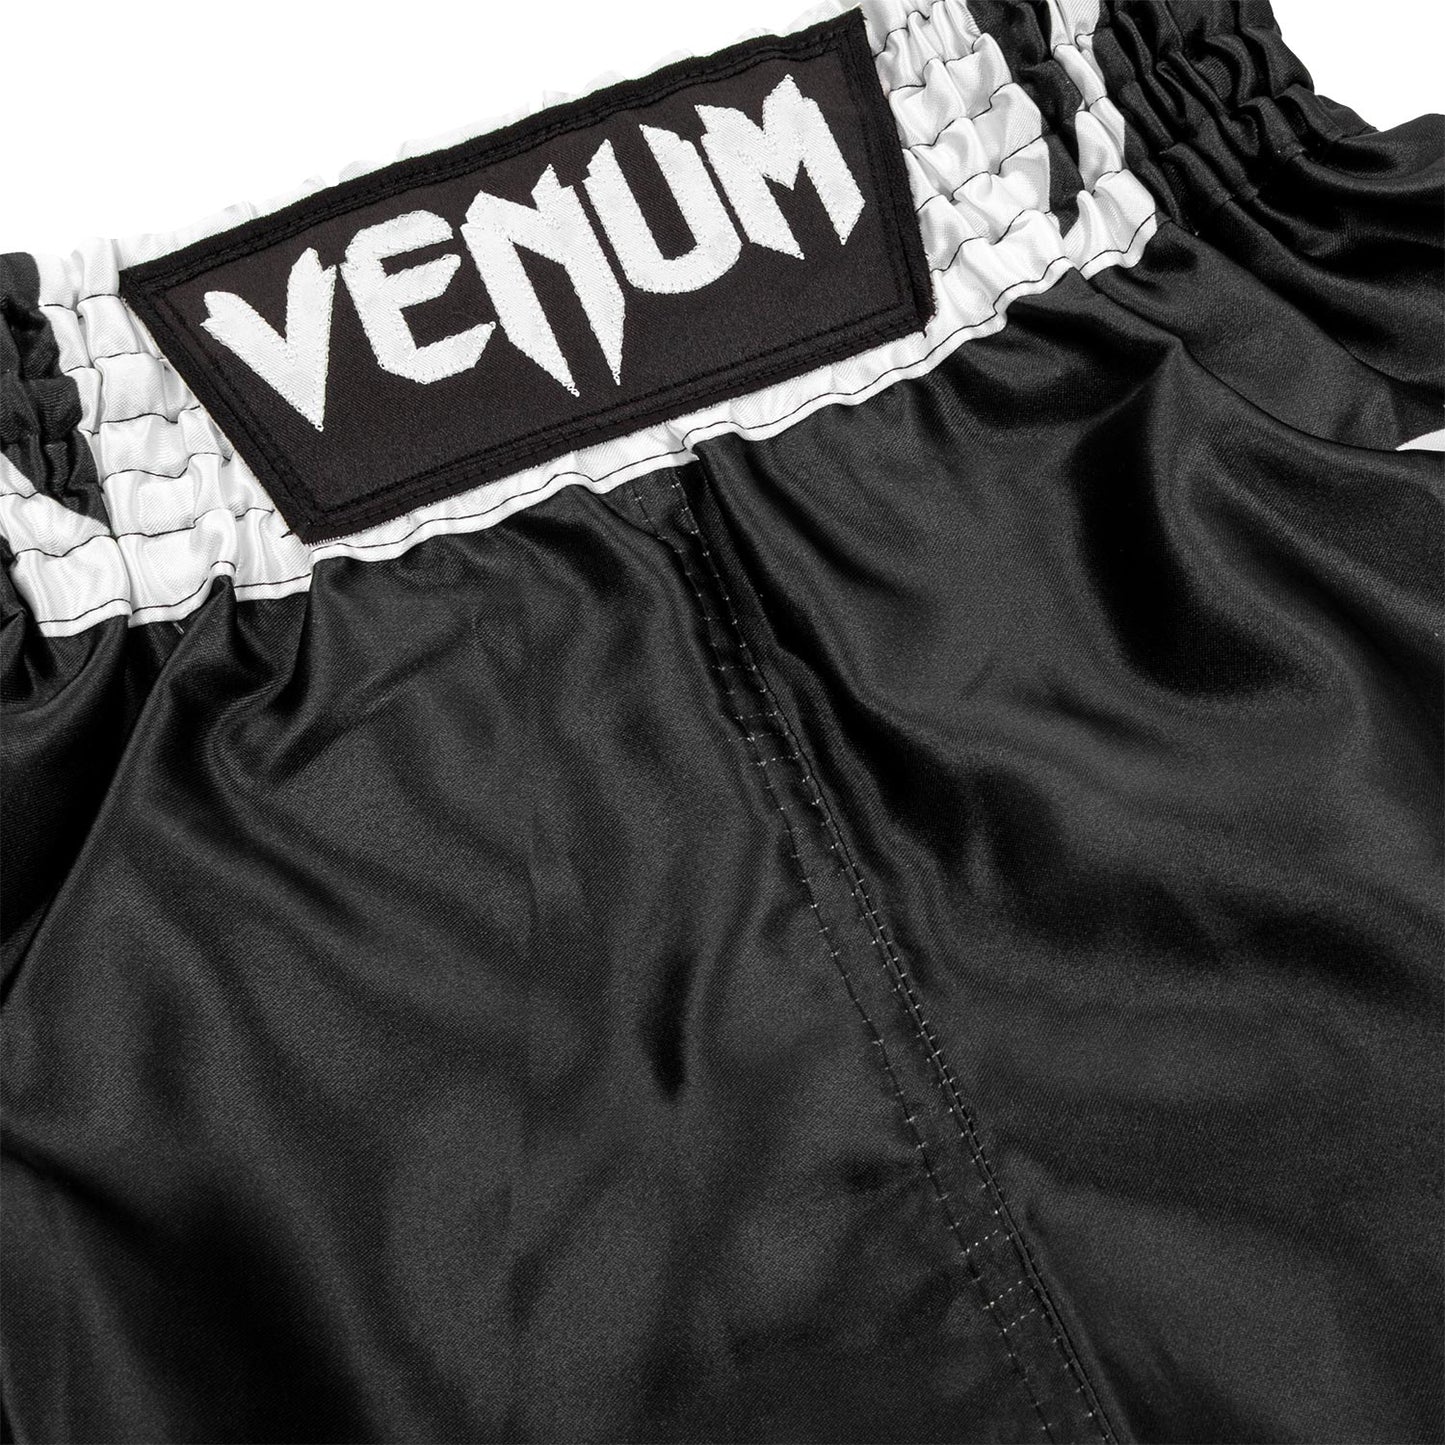 Venum Elite Kids Boxing Shorts - Black/White